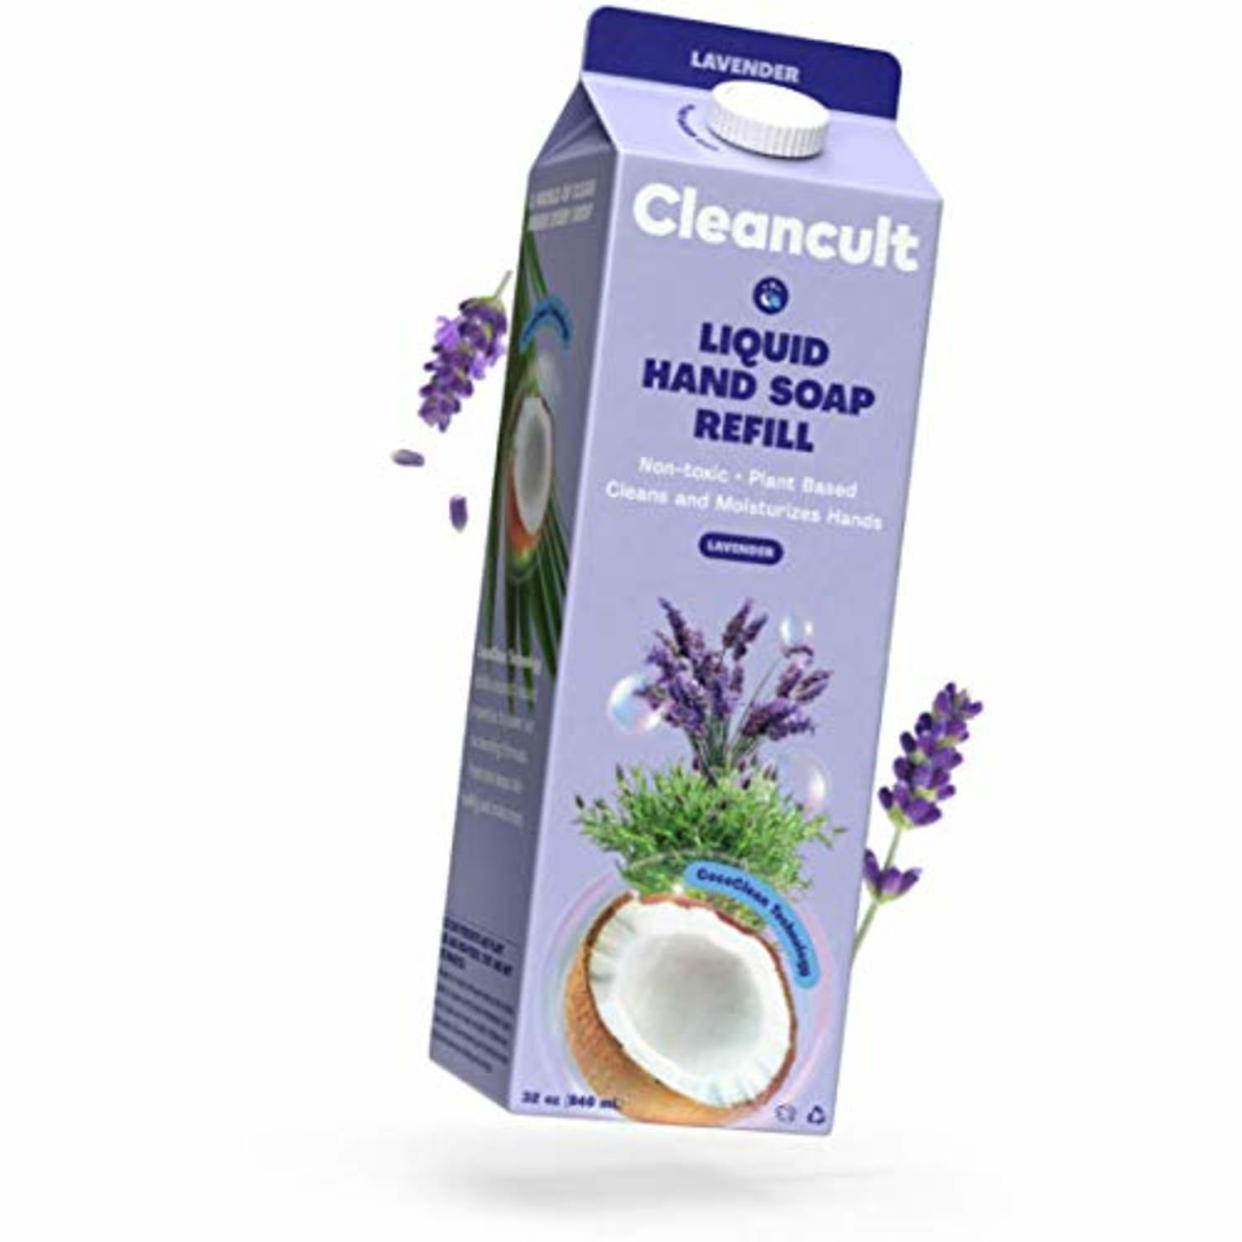 Cleancult Lavender Scent Liquid Hand Soap Refill (Amazon / Amazon)